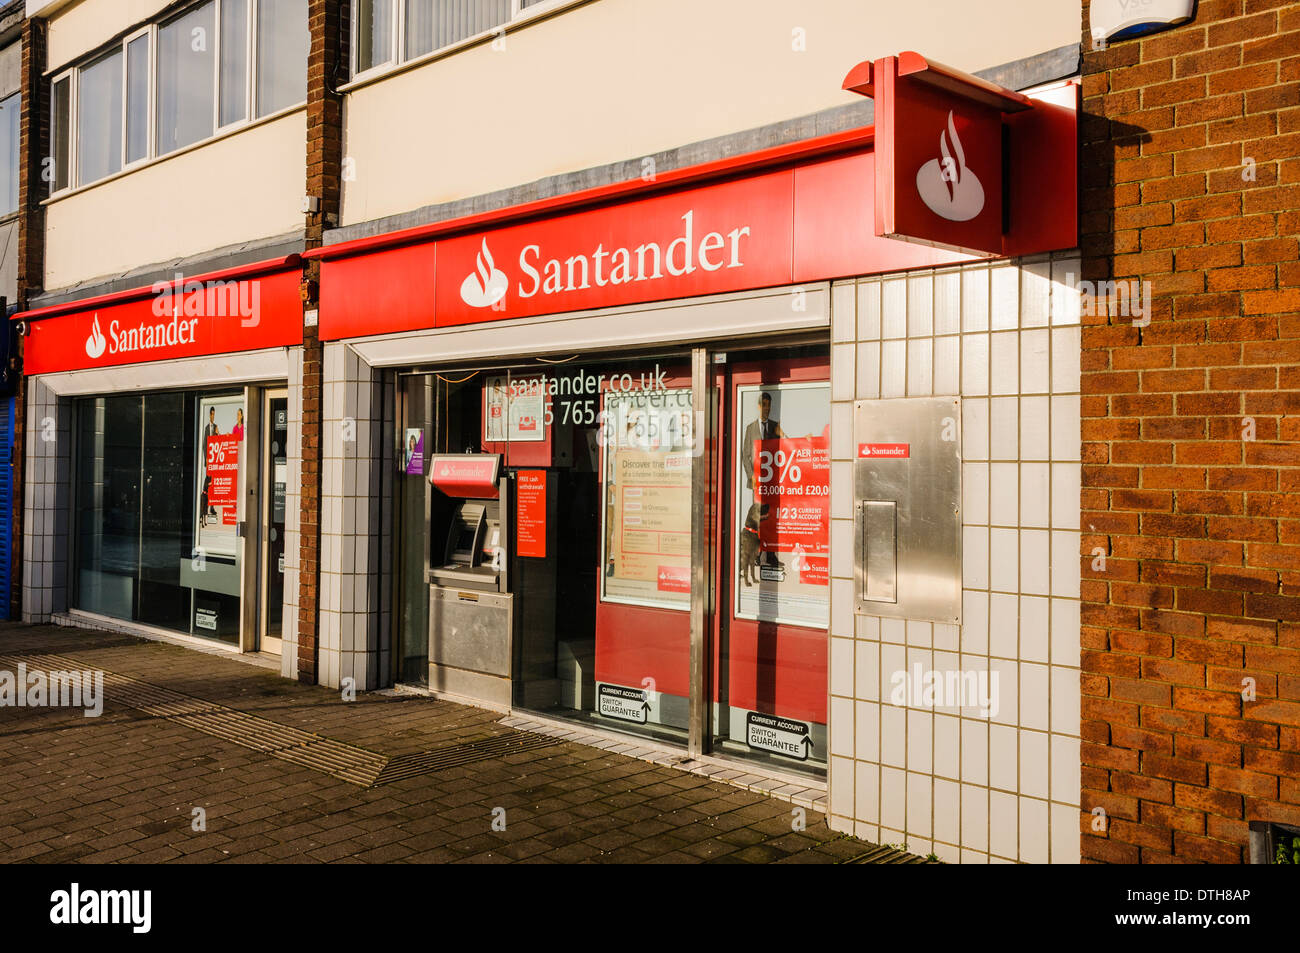 Santander bank branch Stock Photo